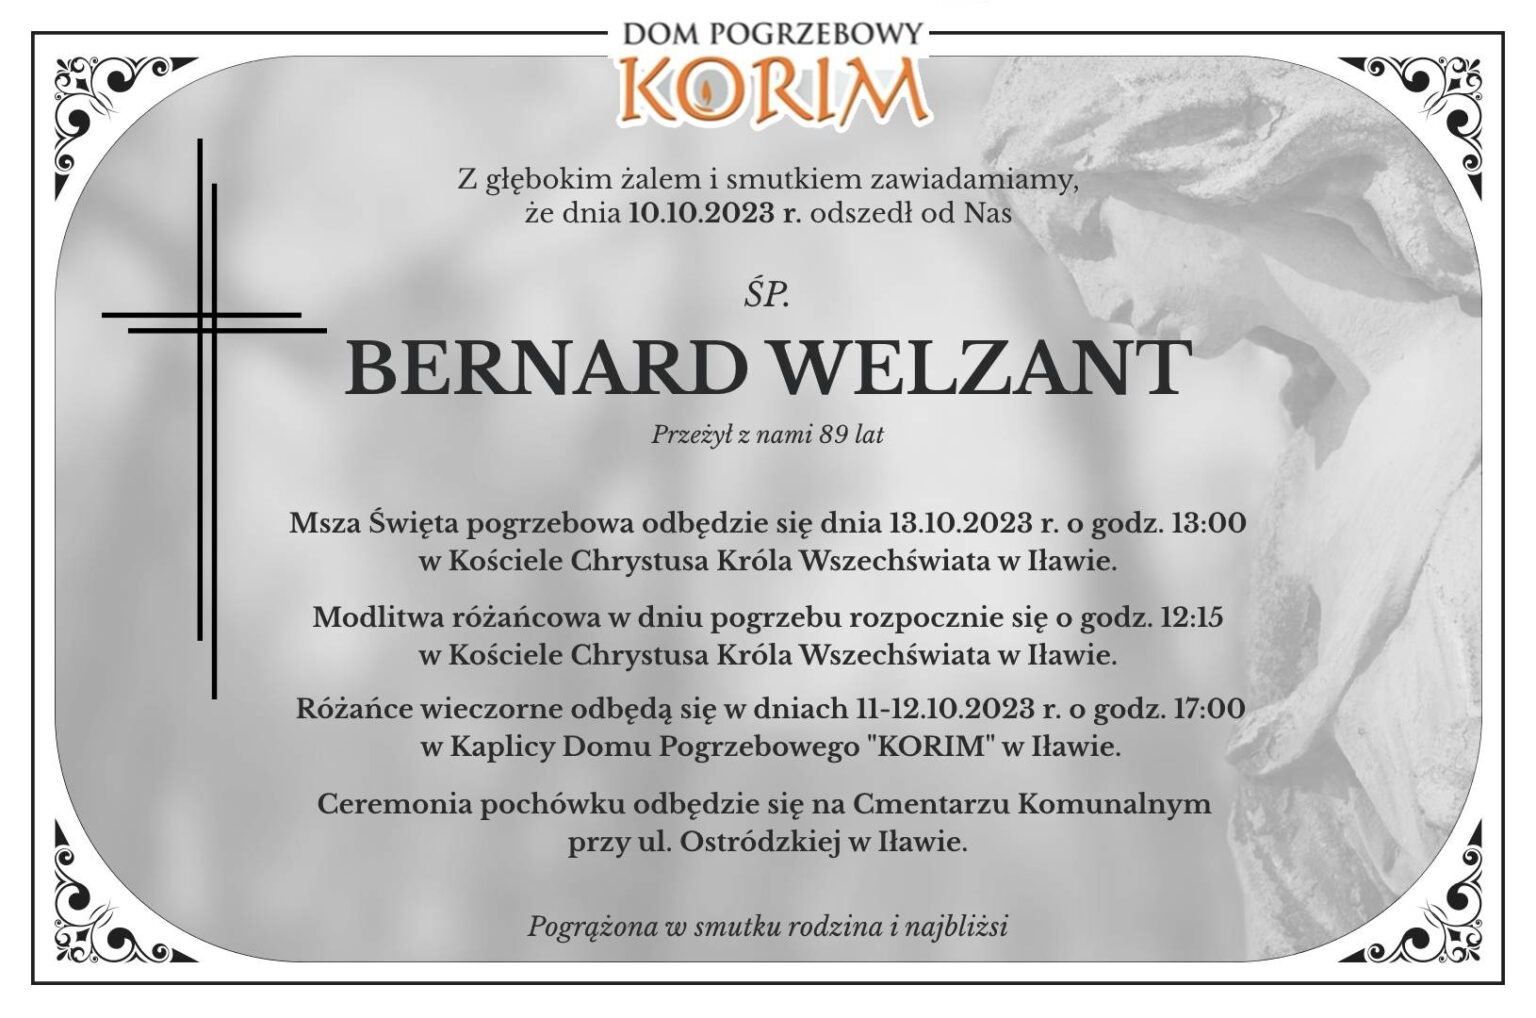 Bernard Welzant